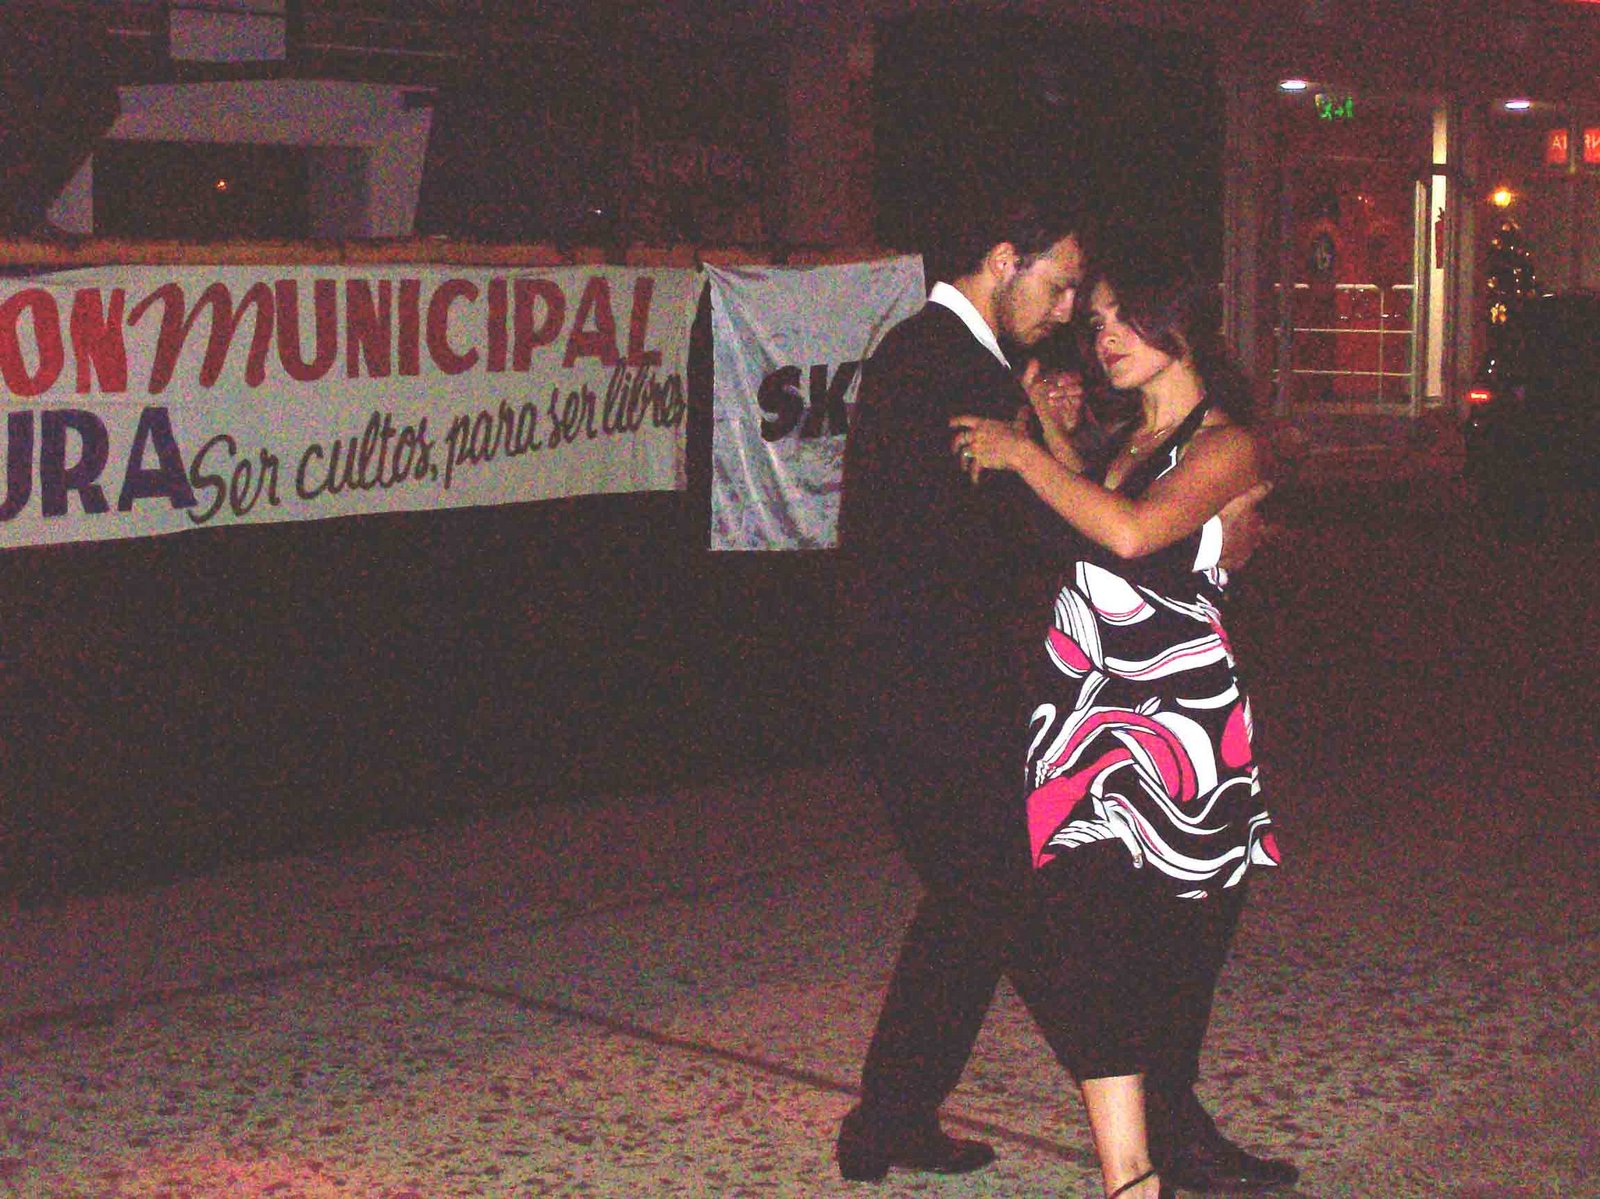 [Goya+Verano+Pora-+Noche+de+Tango-+Mirna+Martinez+y+Ezequiel+Merlo,+excelentes+bailarines+de+tango+se+robaron+aplausos+de+la+concurrencia.jpg]